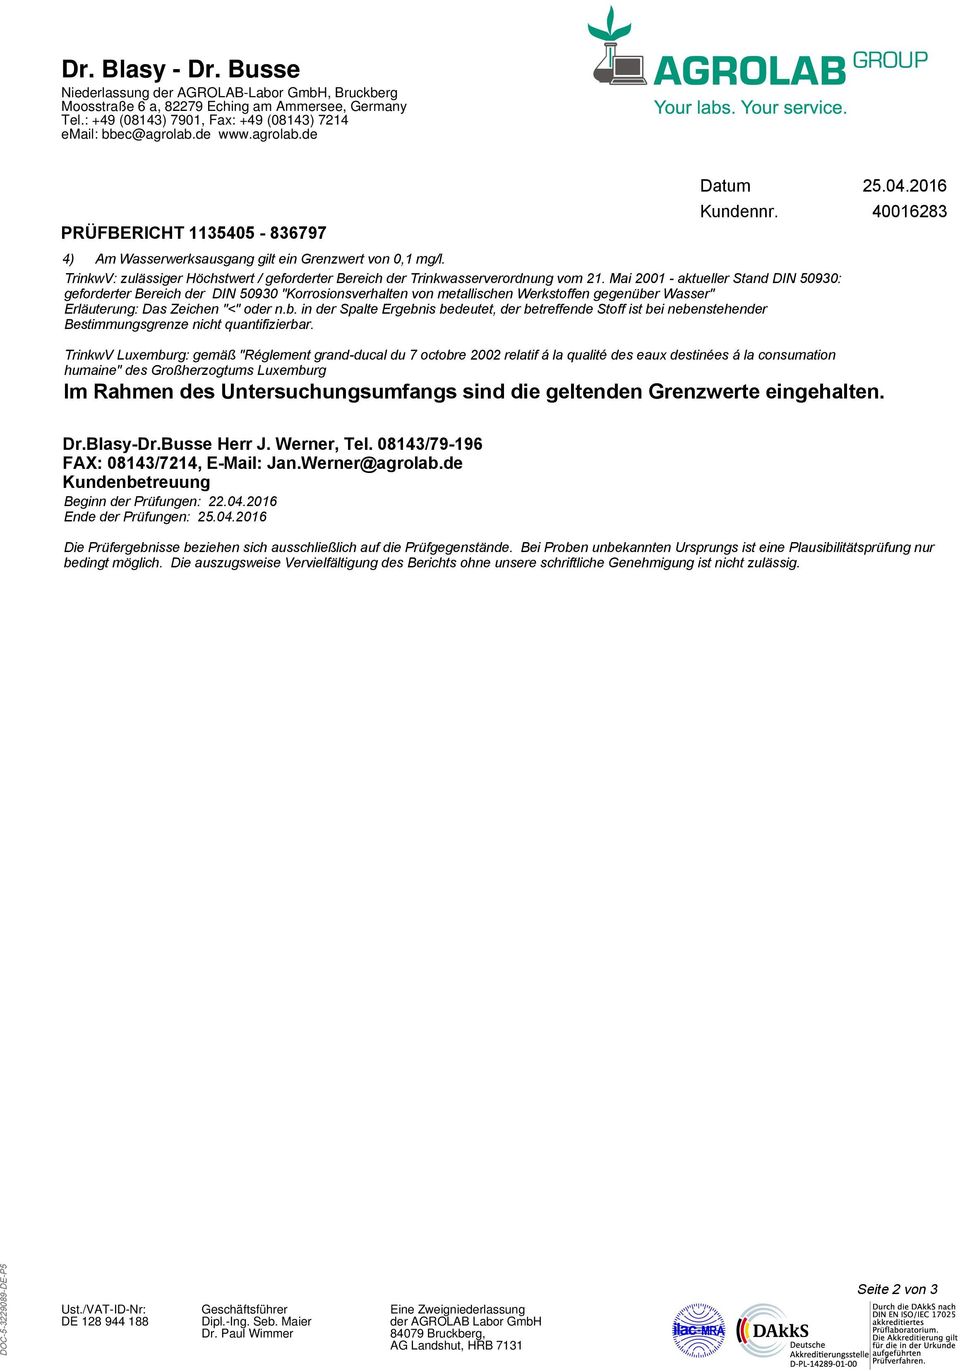 Mai 2 - aktueller Stand DIN 593: geforderter Bereich der DIN 593 "Korrosionsverhalten von metallischen Werkstoffen gegenüber Wasser" Luxemburg: gemäß "Réglement